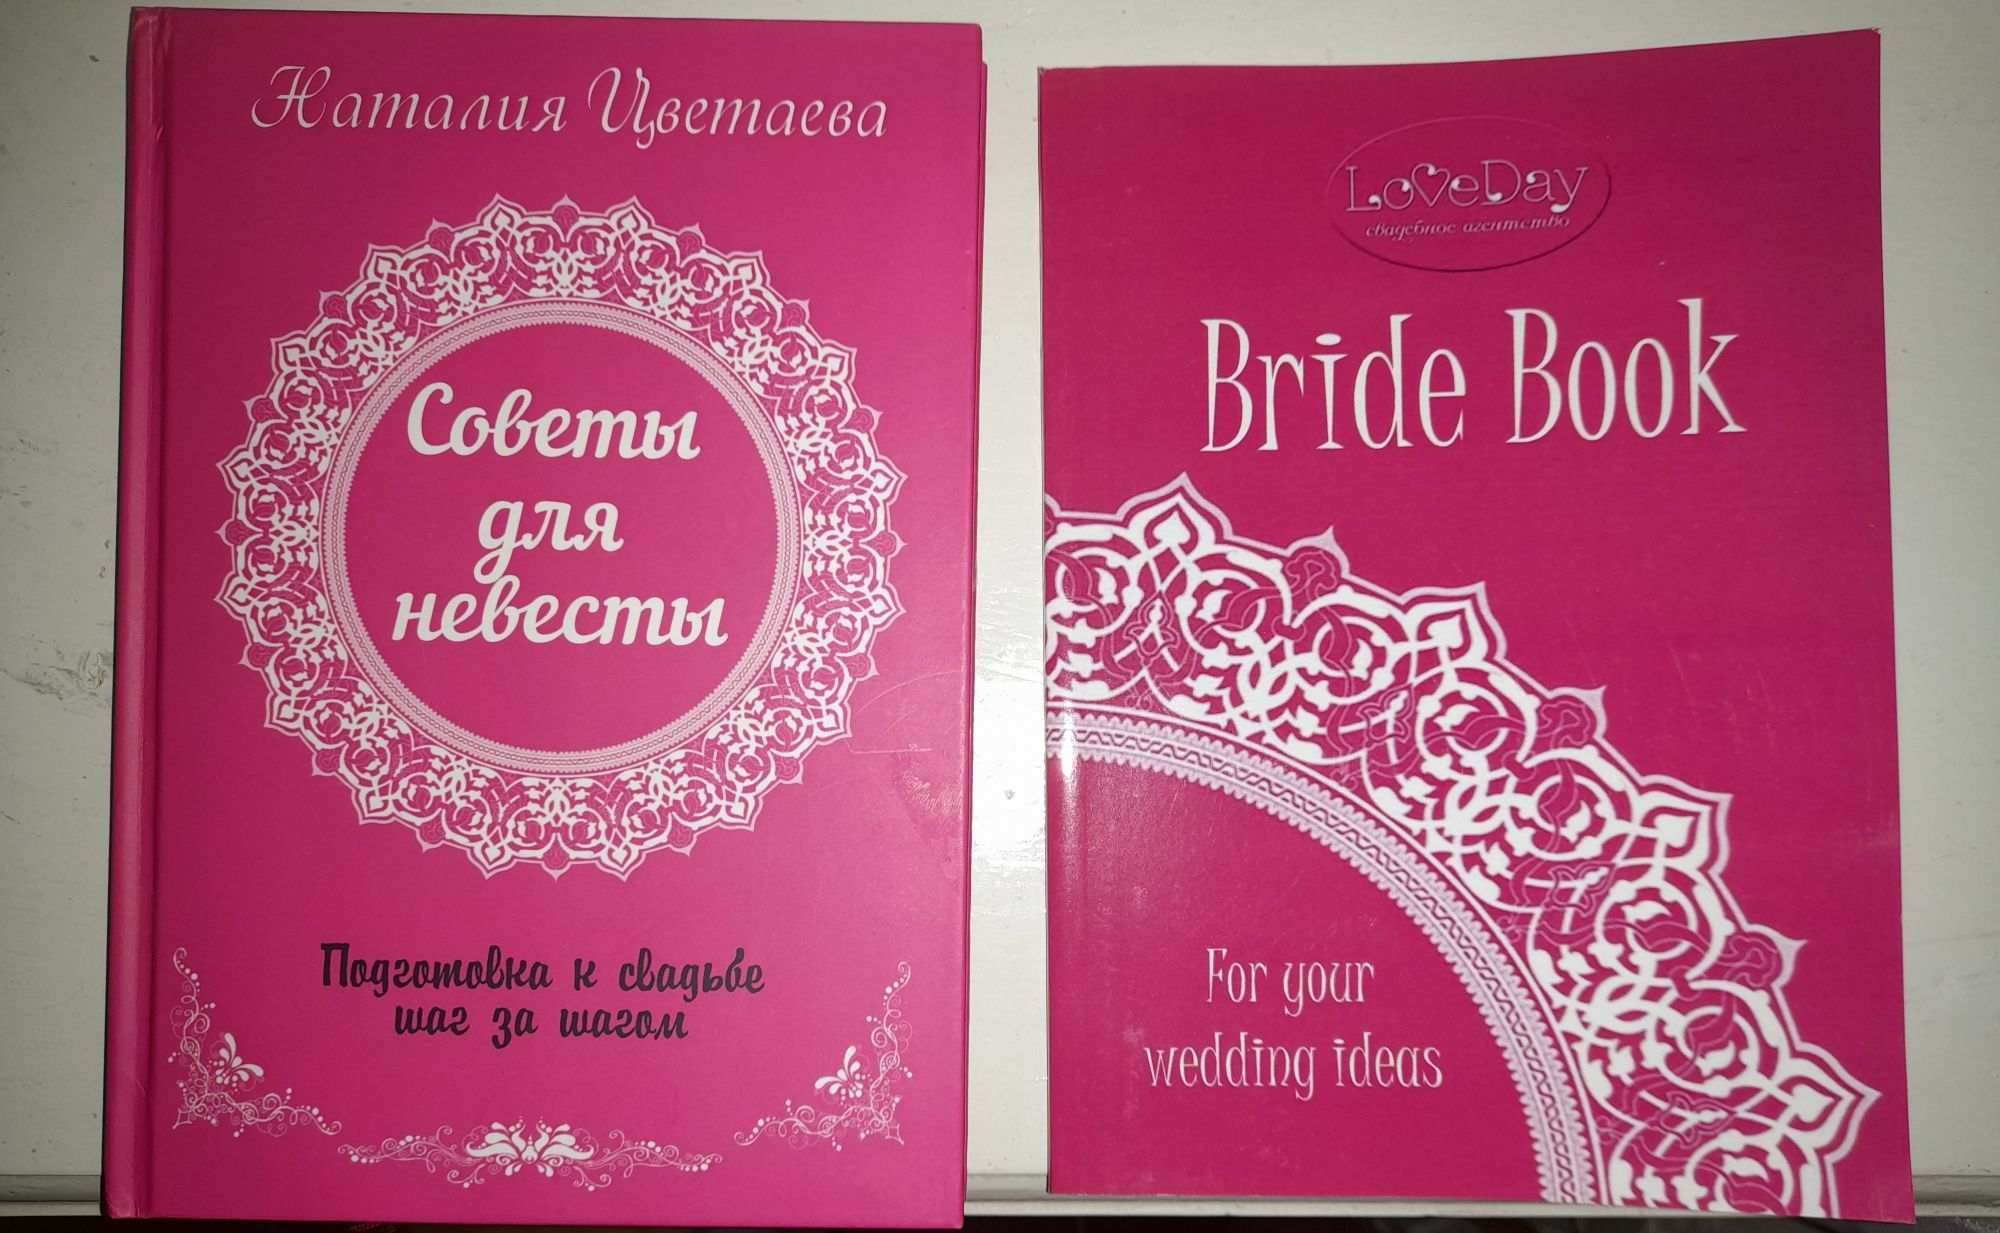 Советы для невесты, дневник невесты. Грамотная организация свадьбы.